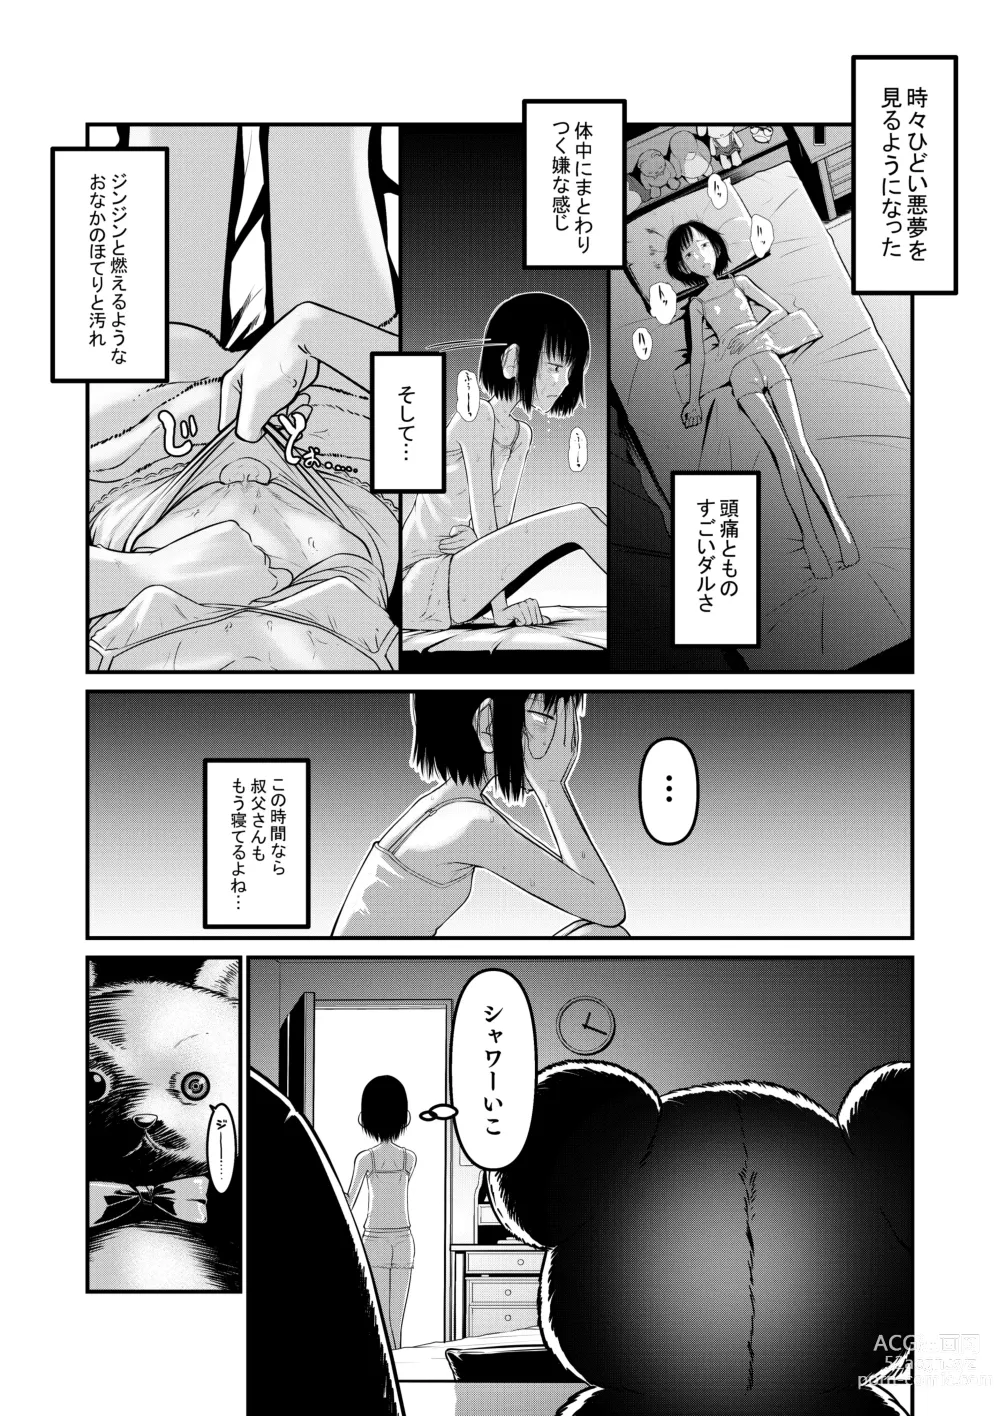 Page 9 of doujinshi Makoto-chan Himitsu no Otetsudai.